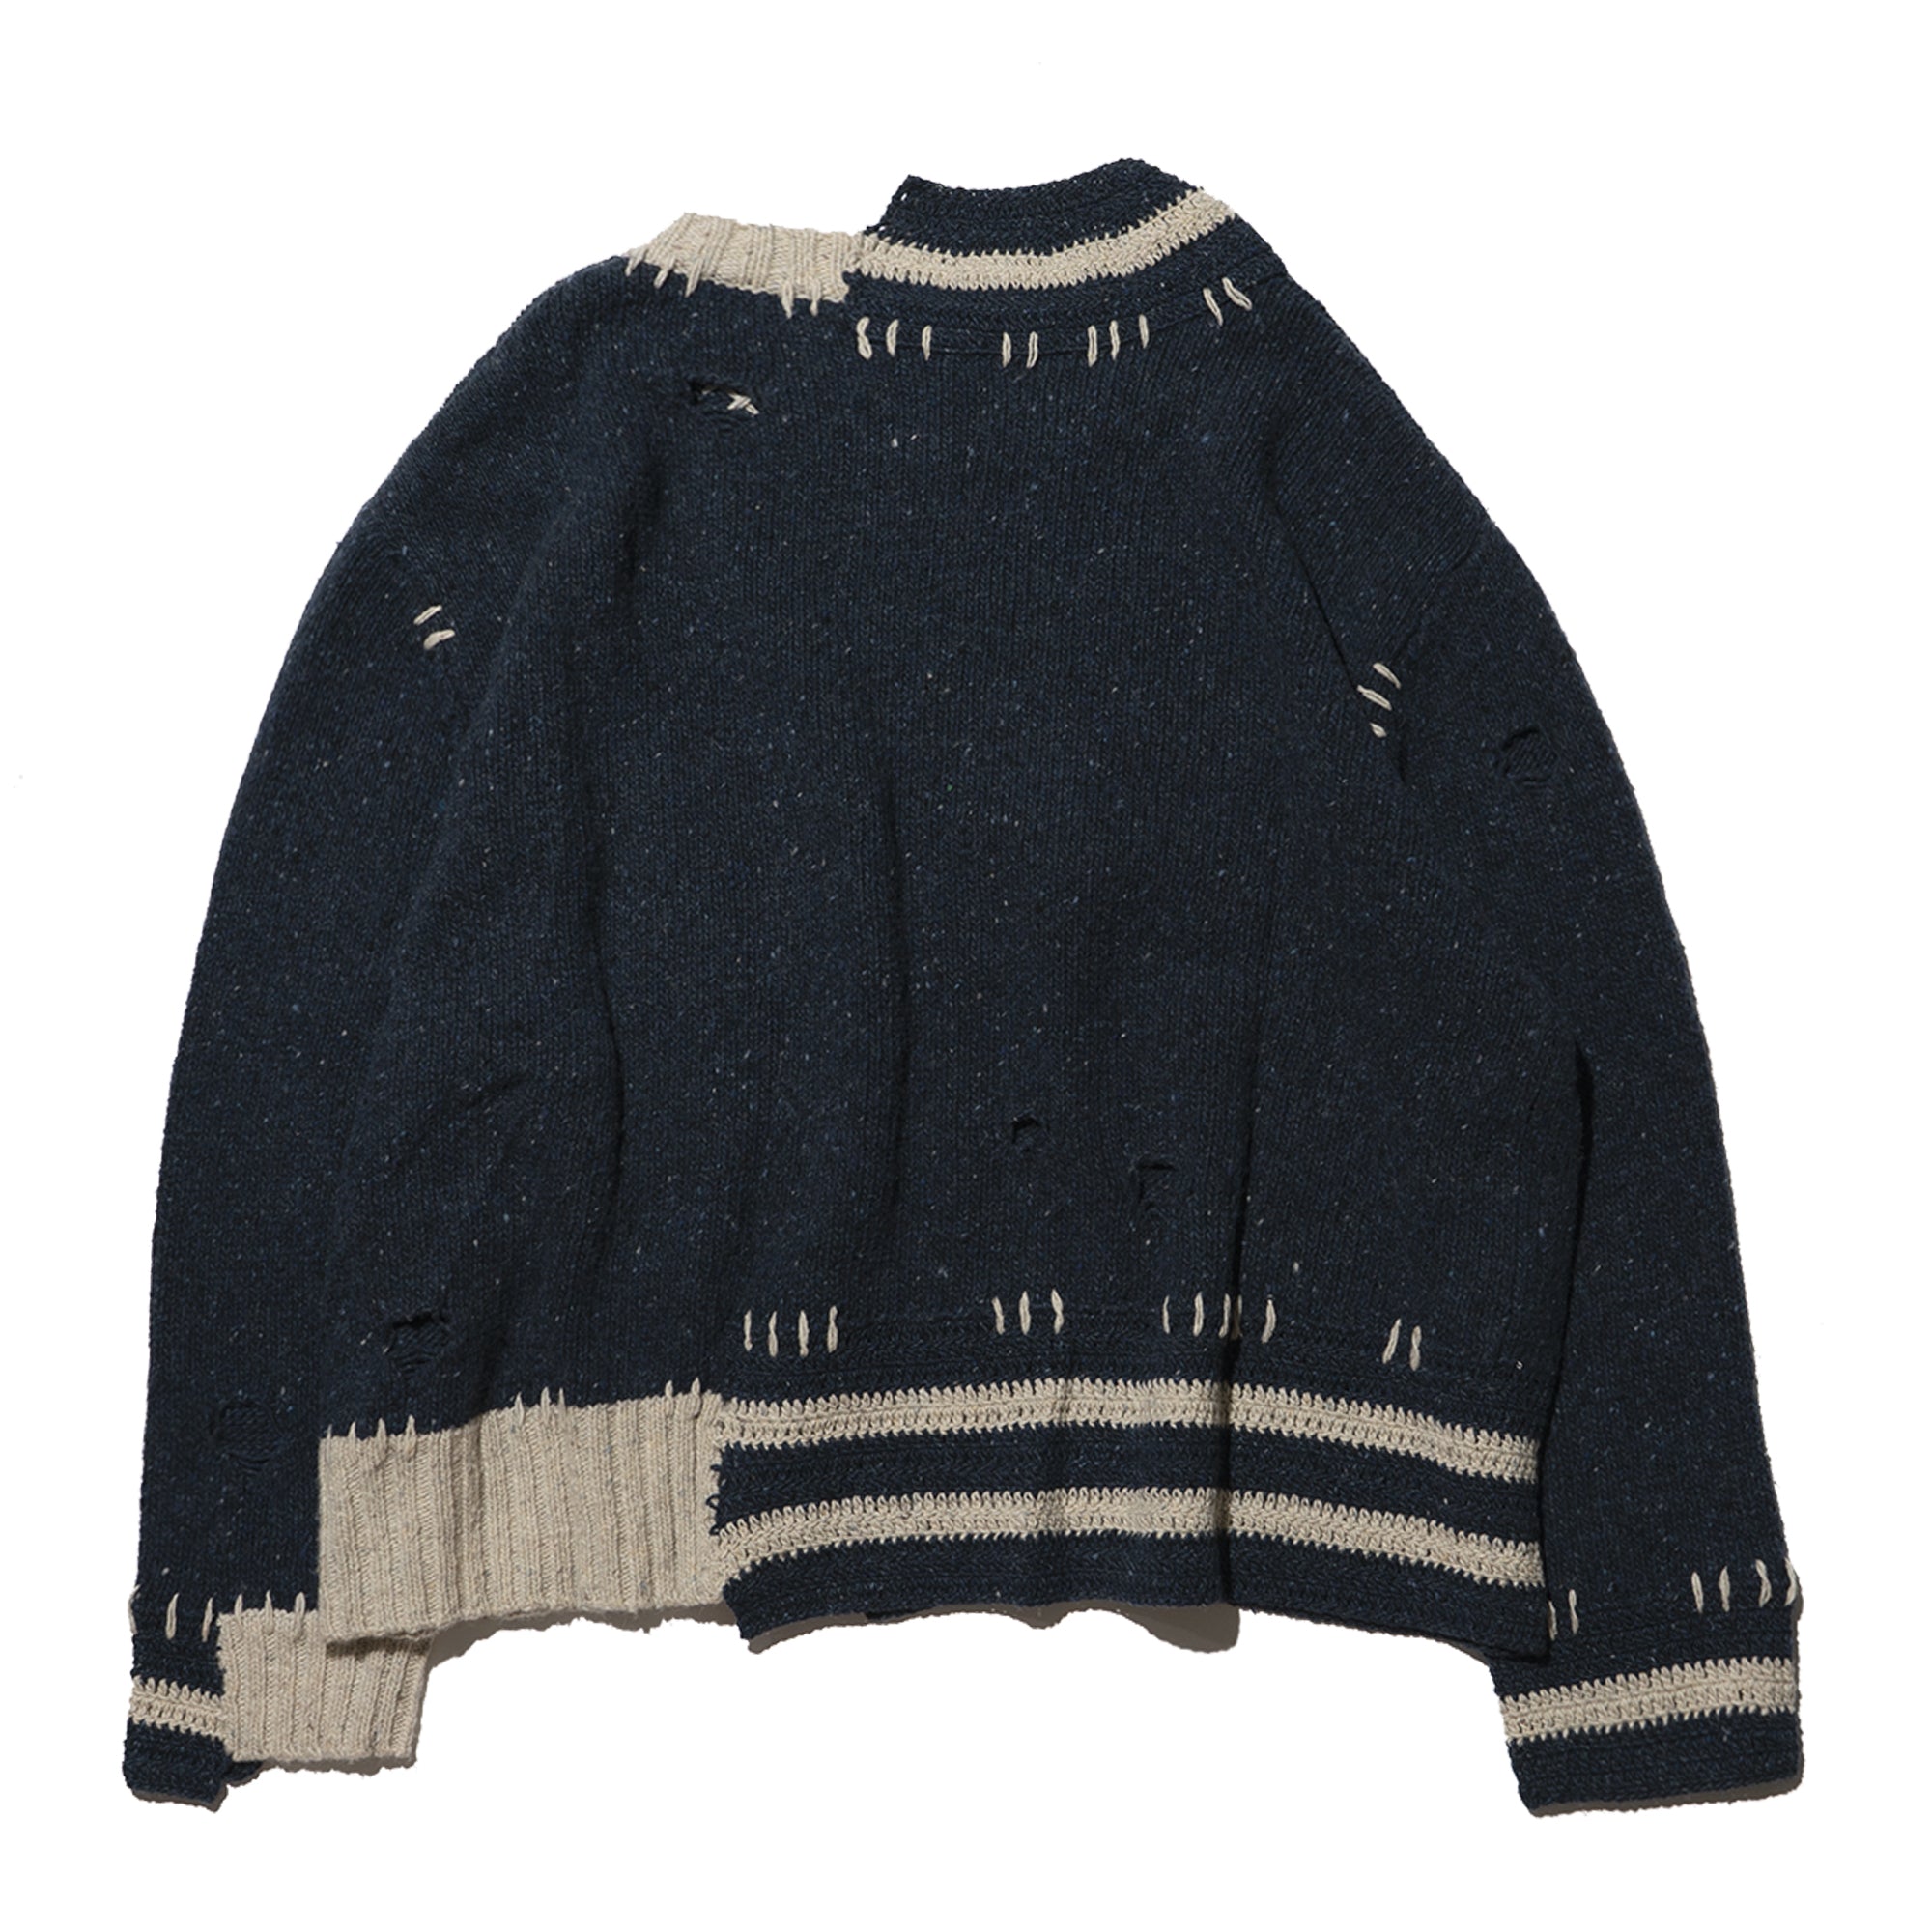 boro boro knit sweater – PLATEAU STUDIO